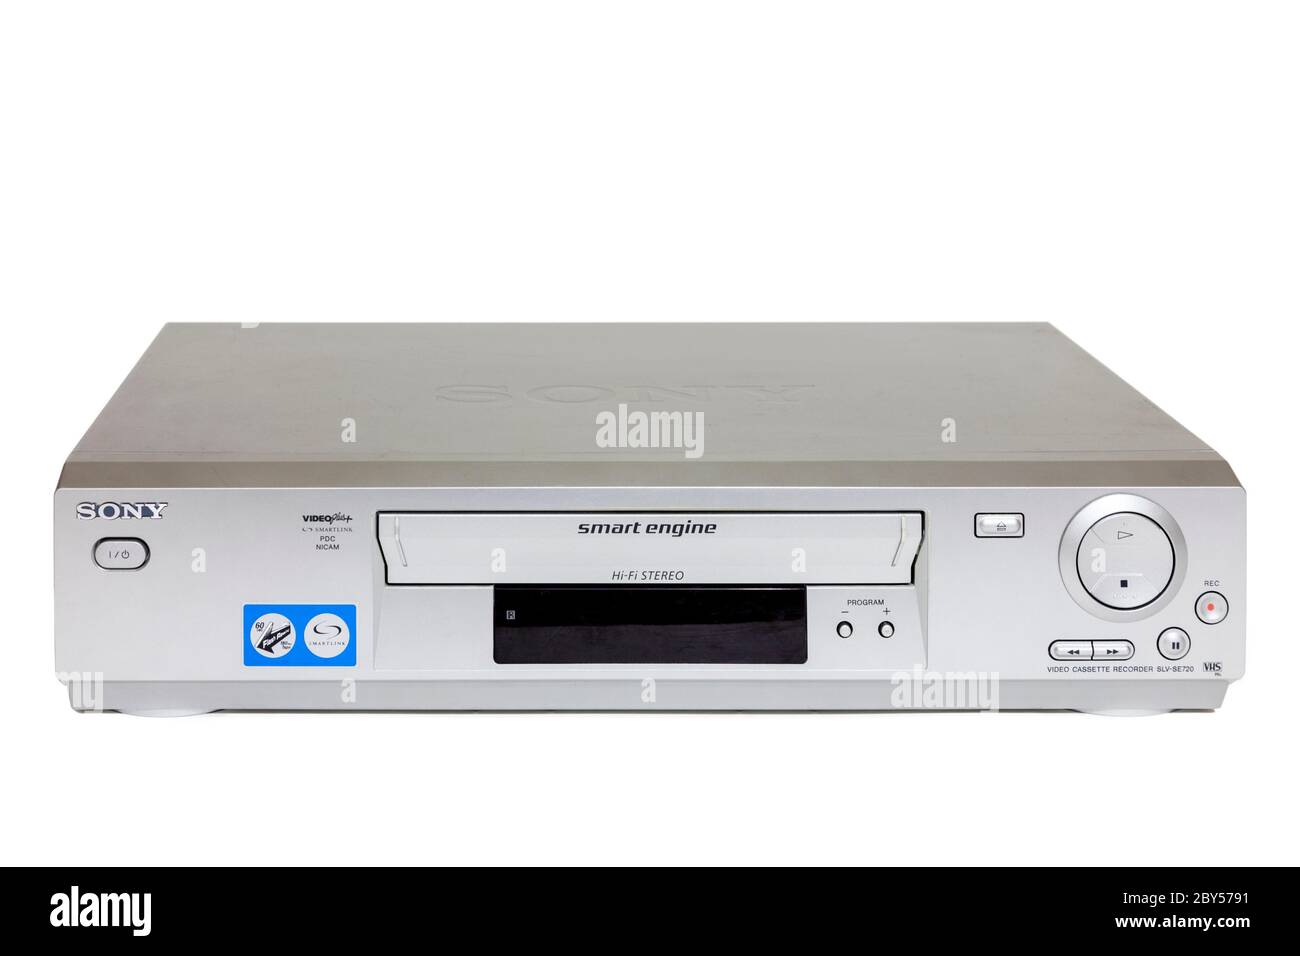 Sony video cassette grabador SLV-SE720, un modelo posterior de VCR en formato VHS con video plus y Nicam estéreo Foto de stock